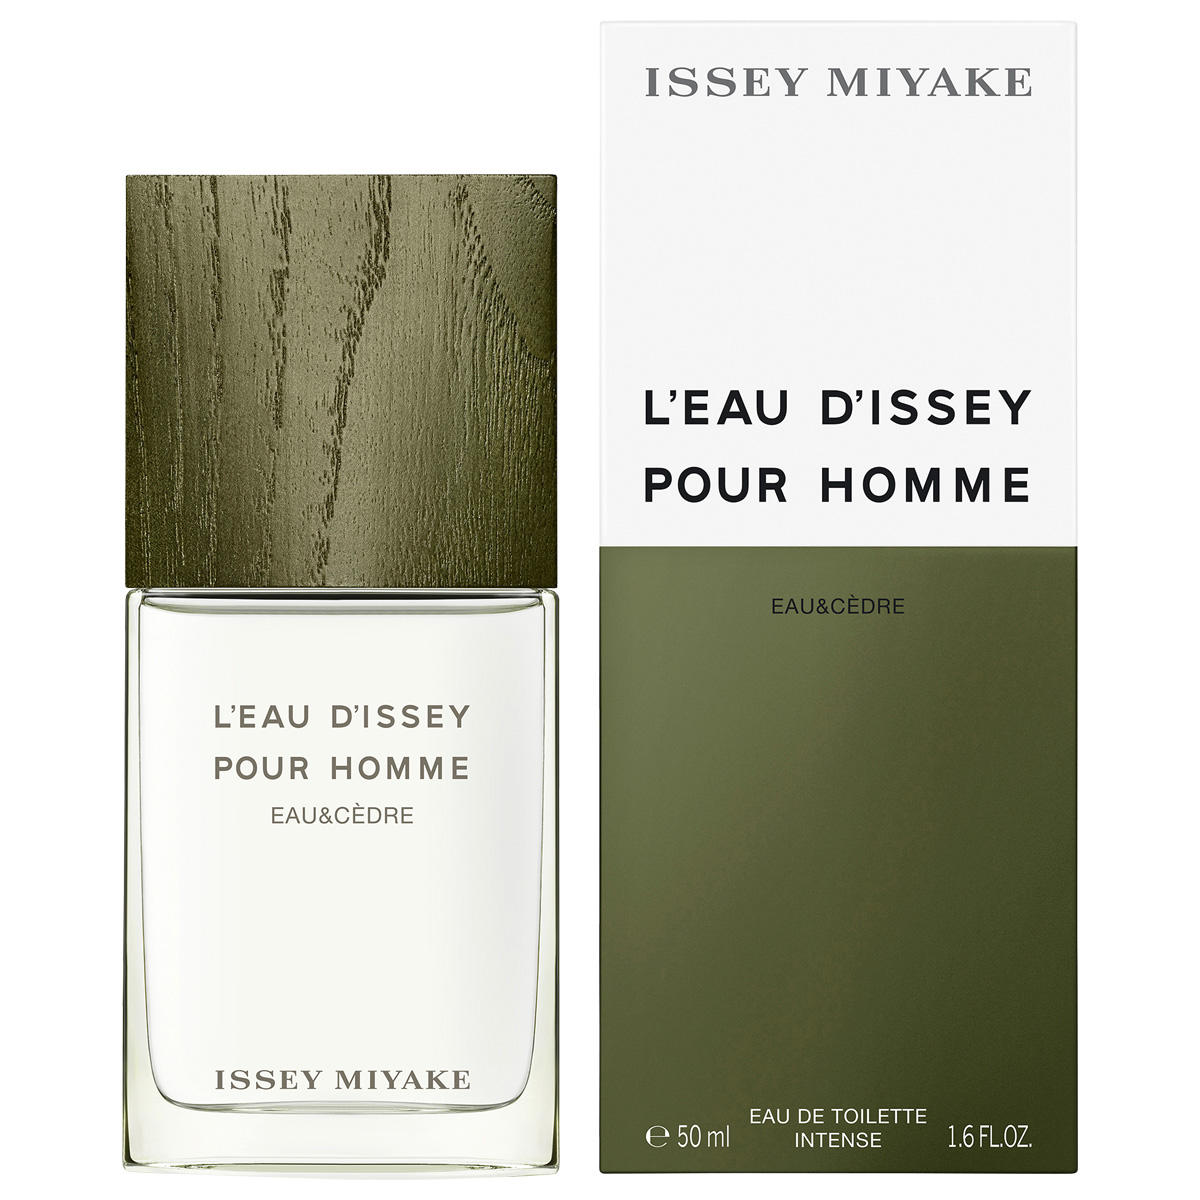 Issey Miyake L'Eau d'Issey Pour Homme Eau & Cèdre Eau de Toilette Intense 50 ml - 2